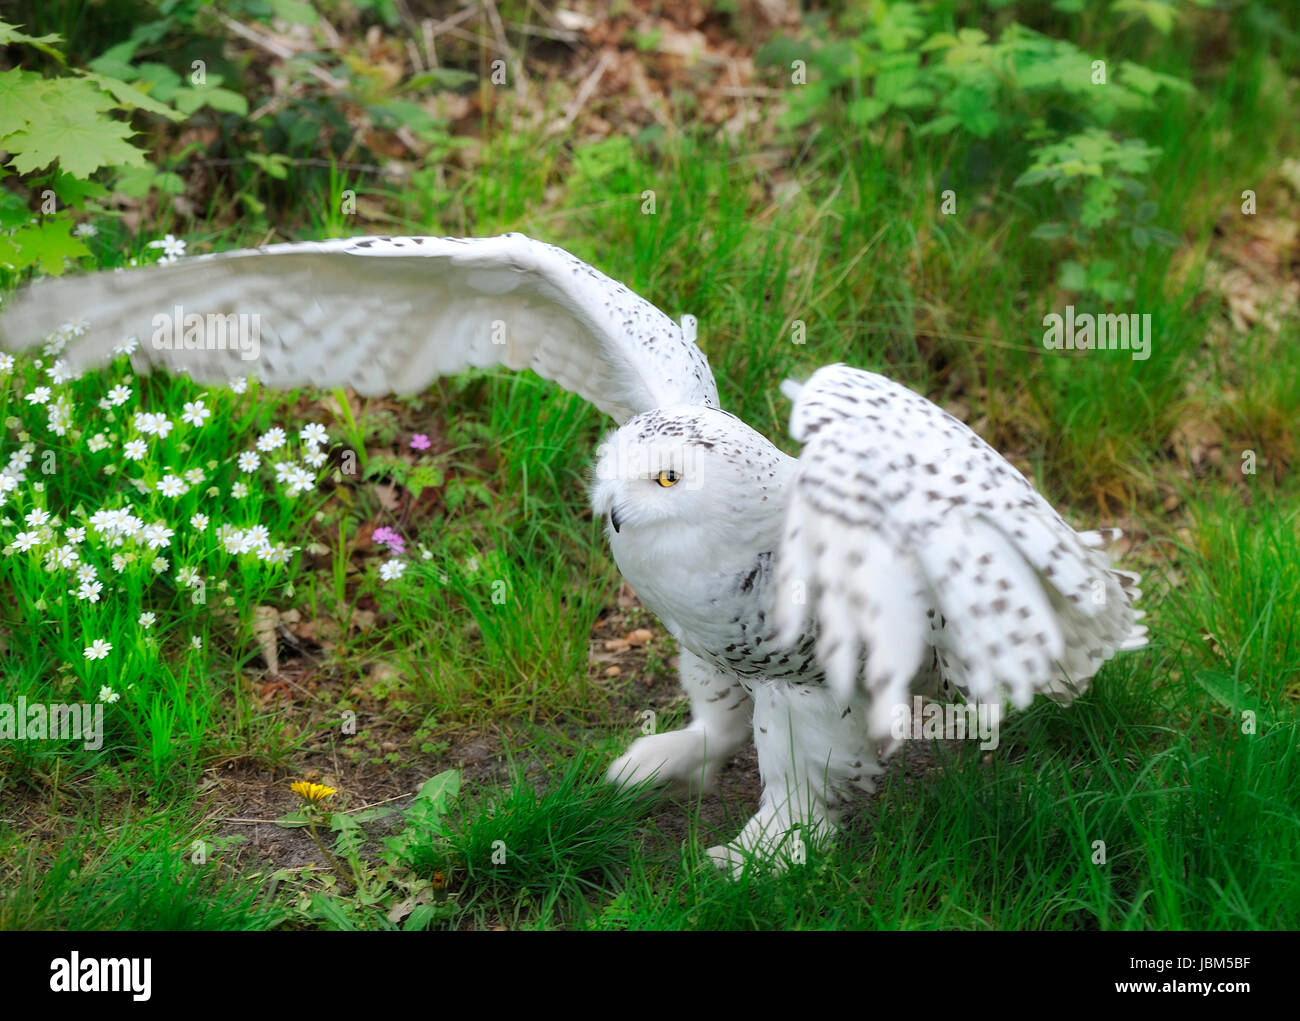 Snowy Owl (Bubo scandiacus, Nyctea scandiaca), Regenstein,Blankenburg, Sachsen Anhalt, Germany, North Europe Stock Photo